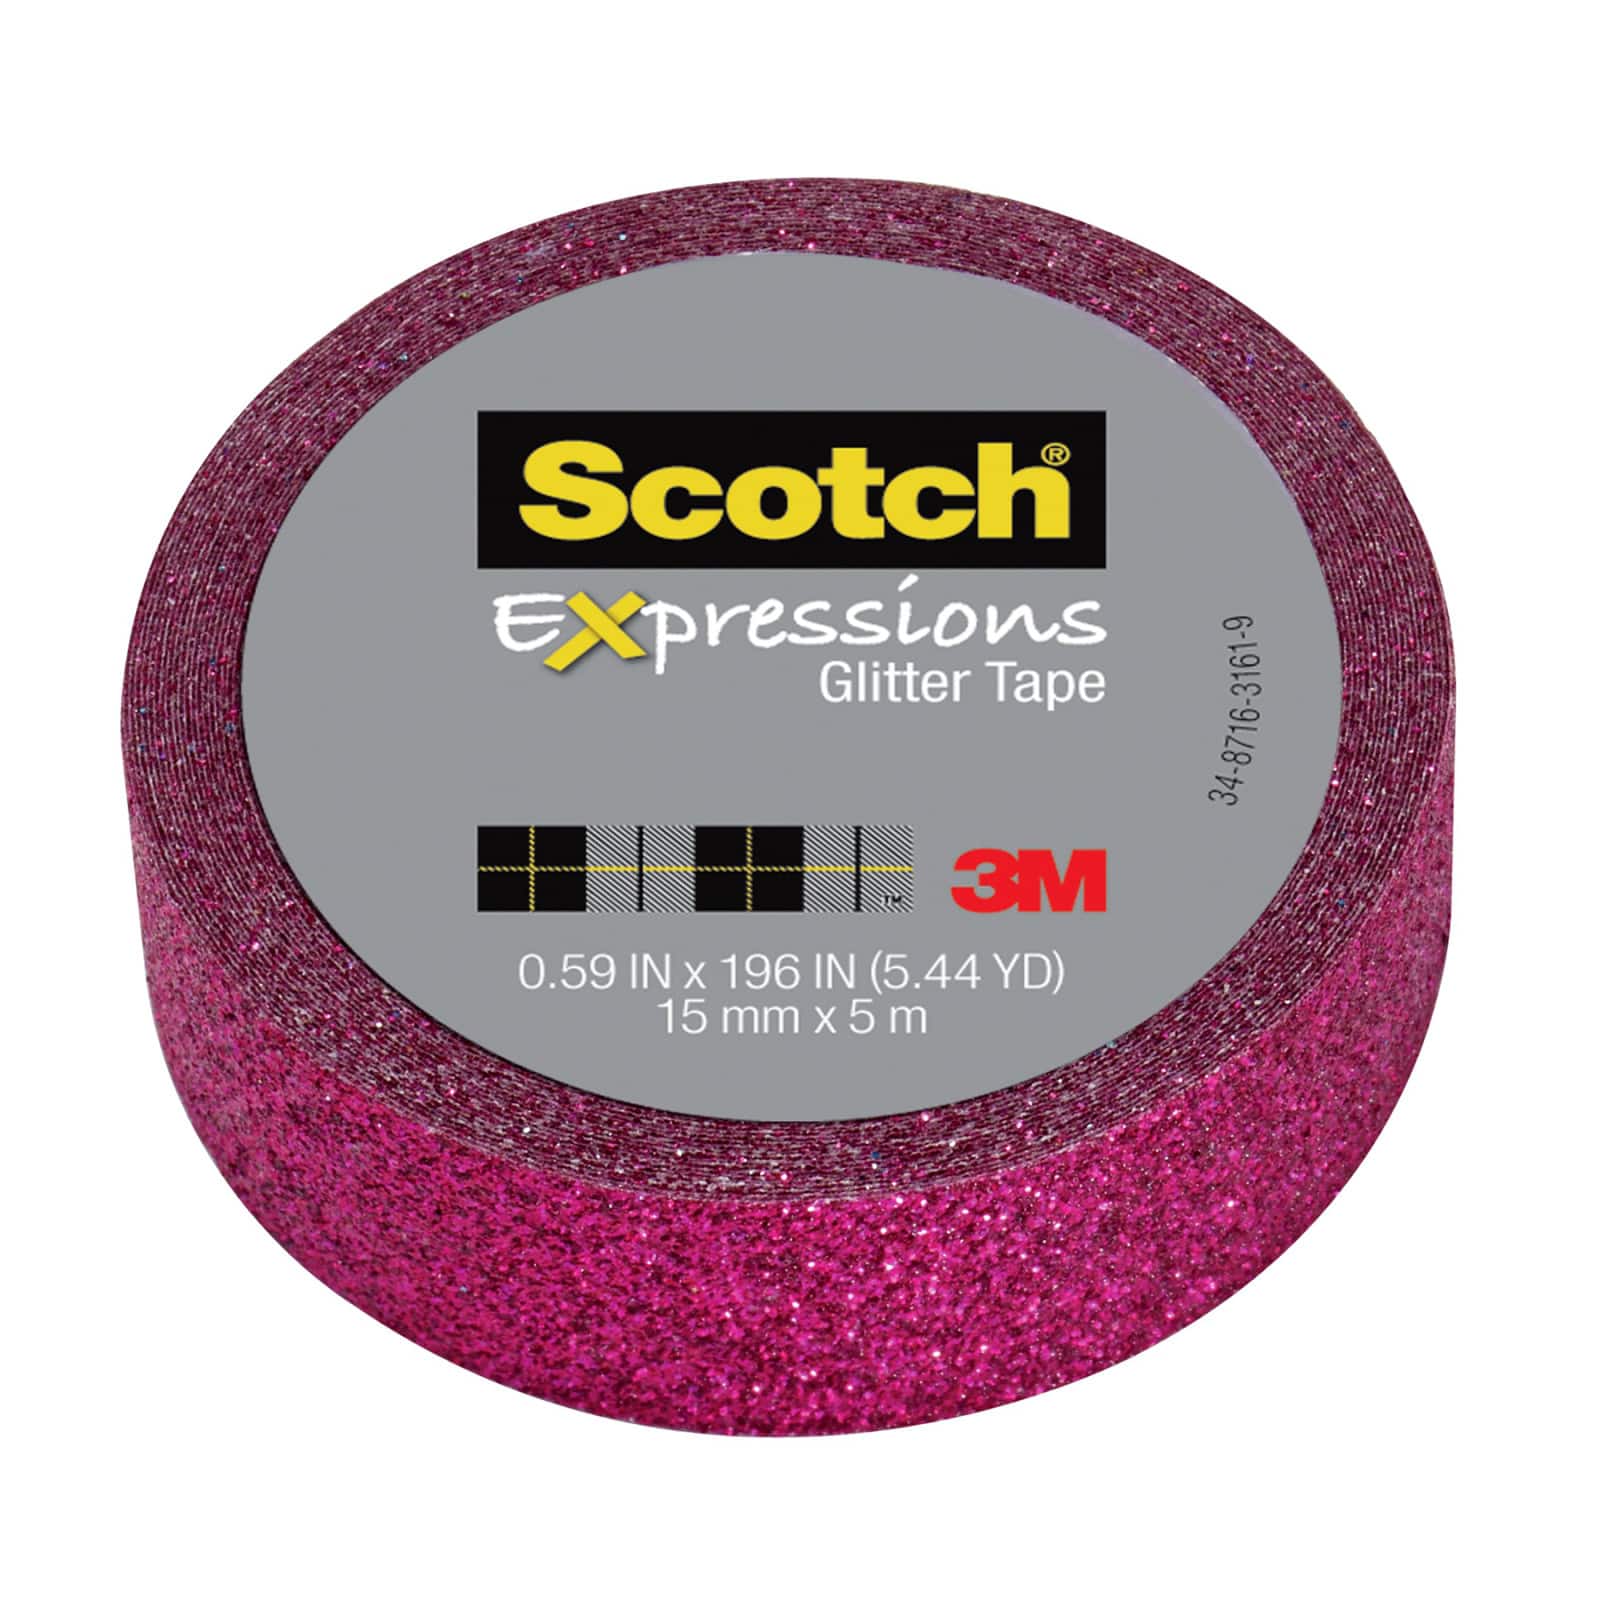 12 Pack: 3M Scotch&#xAE; Expressions Glitter Tape